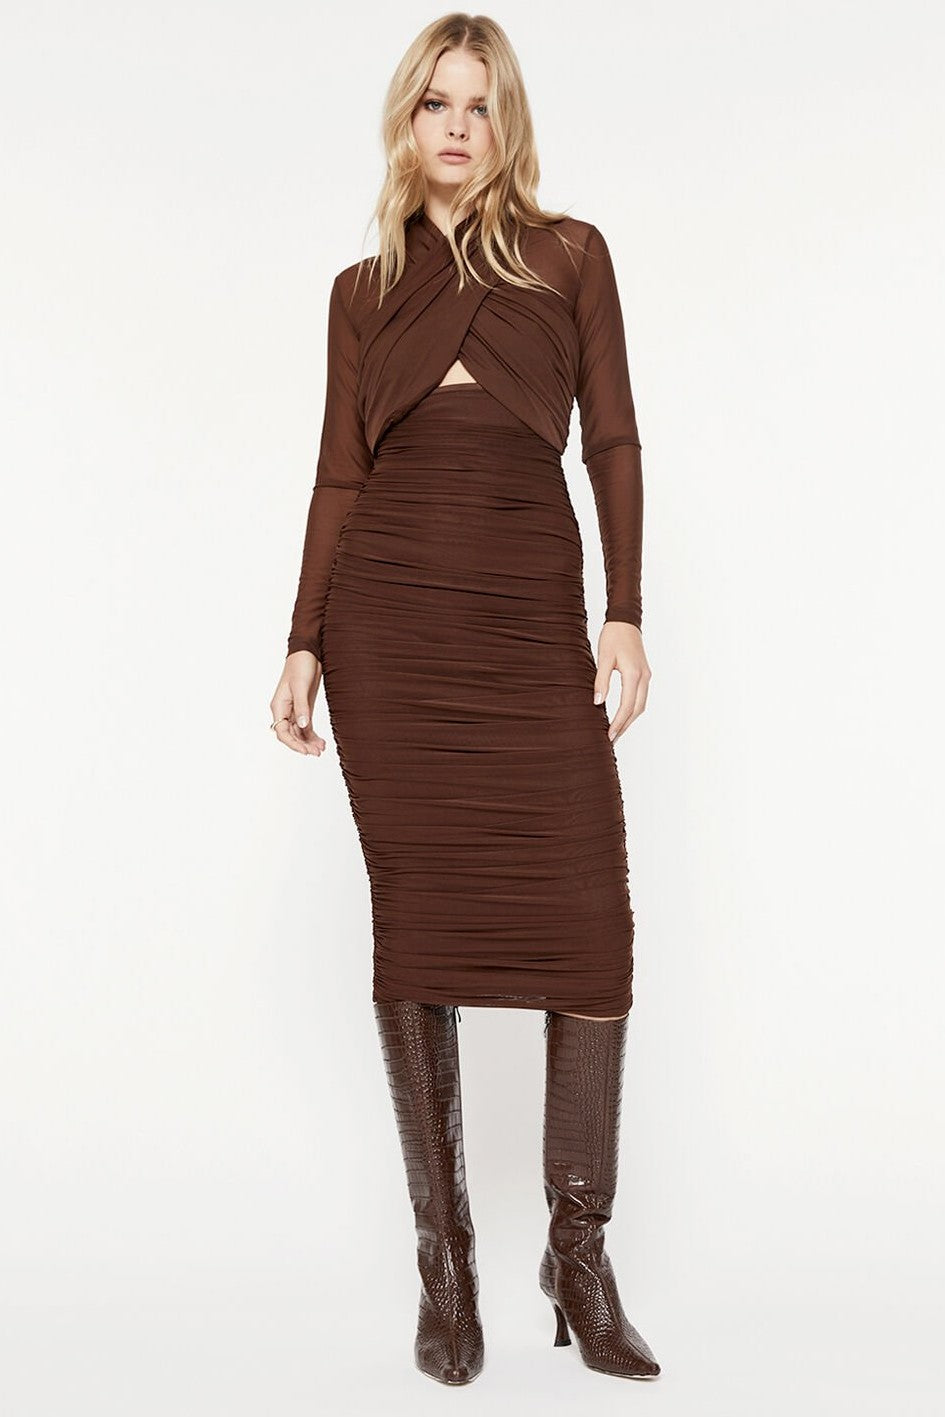 Aliyah Dress - Chocolate - SHOPJAUS - JAUS